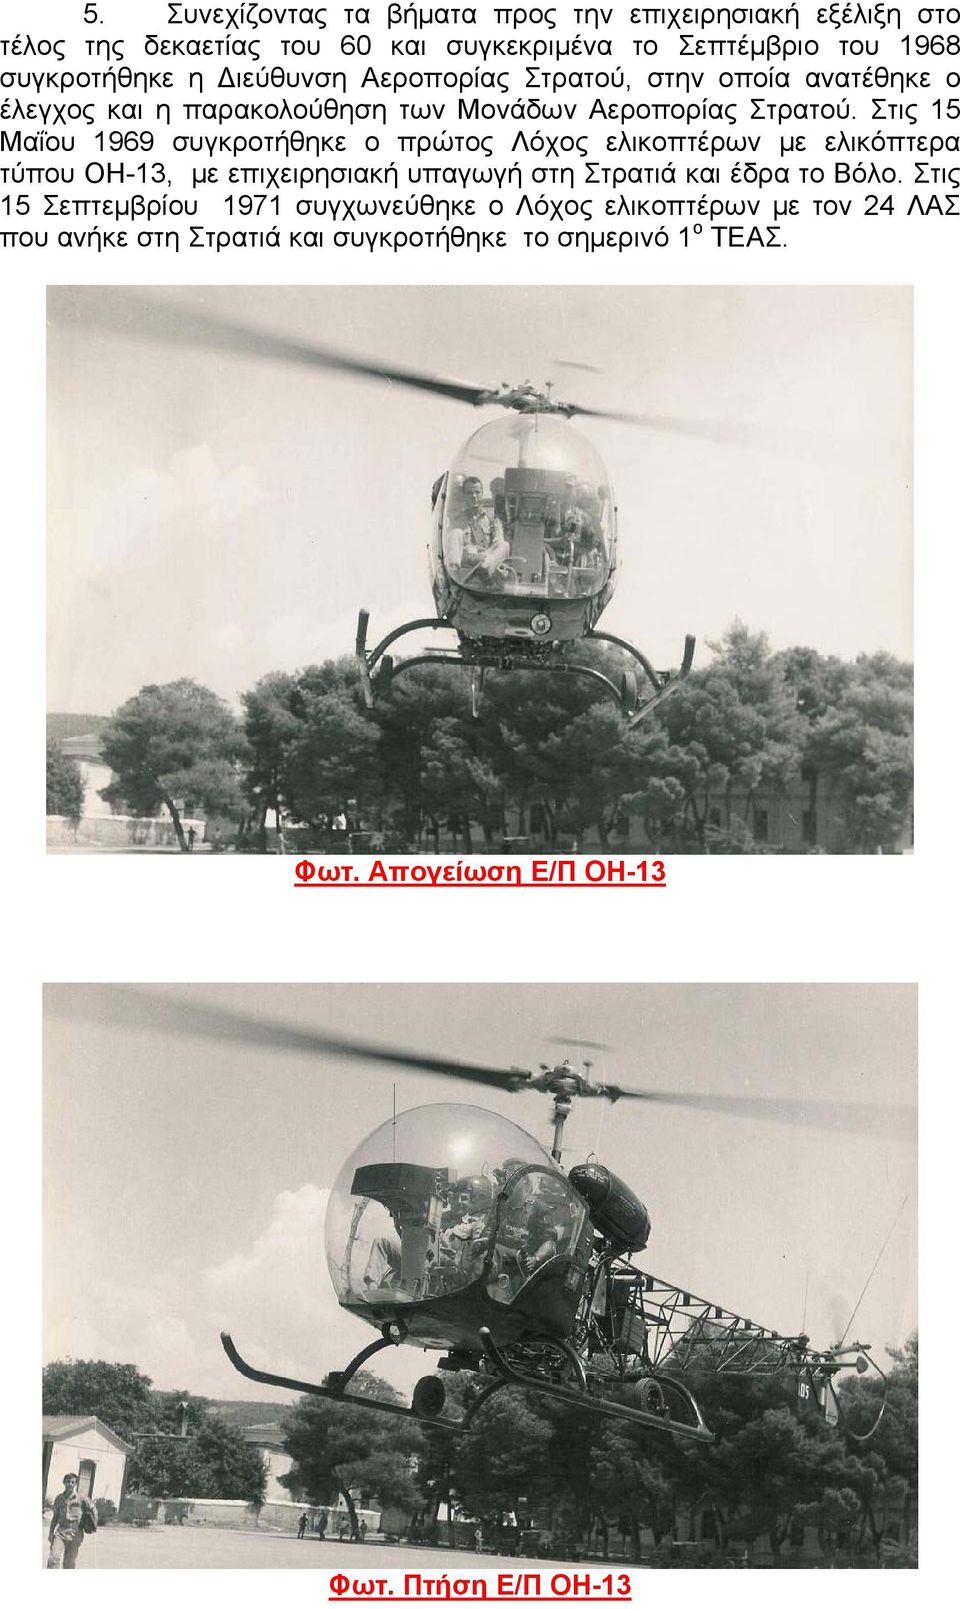 Στις 15 Μαΐου 1969 συγκροτήθηκε ο πρώτος Λόχος ελικοπτέρων με ελικόπτερα τύπου ΟΗ-13, με επιχειρησιακή υπαγωγή στη Στρατιά και έδρα το Βόλο.